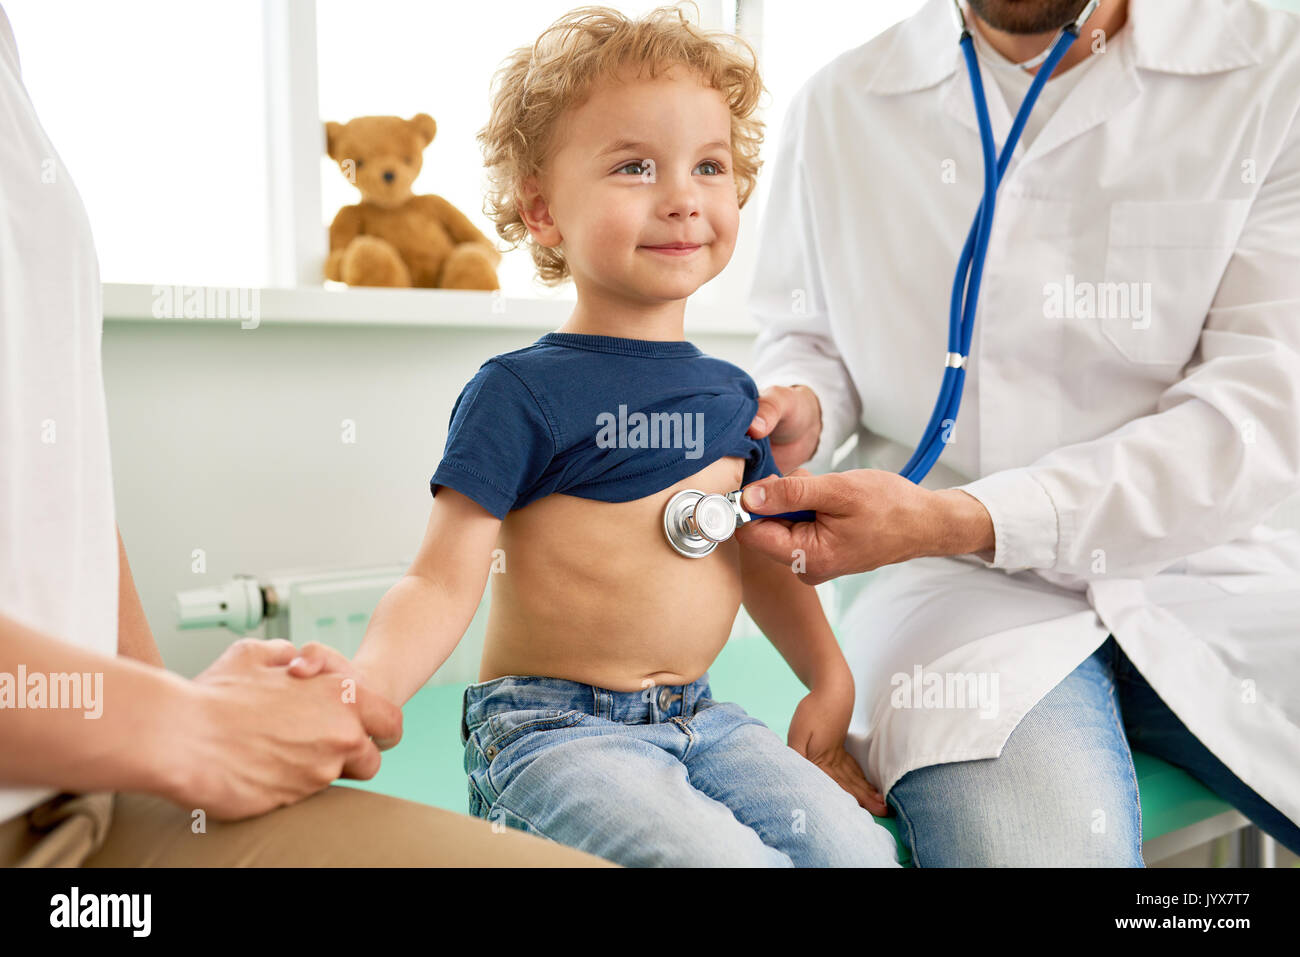 Lächelnd kleine Junge an medizinischen Checkup Stockfoto